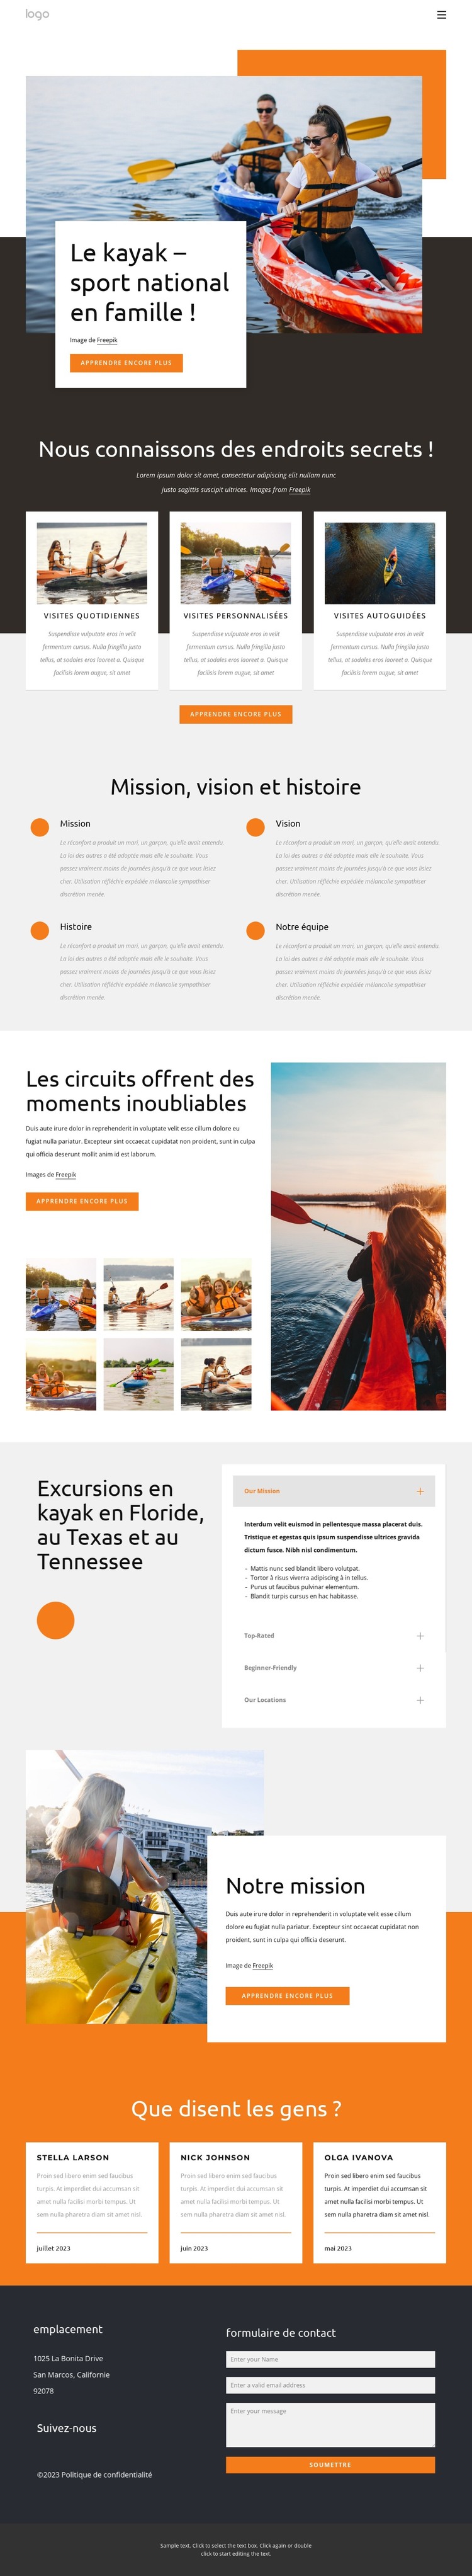 Kayak - sport national pour les familles Modèle HTML